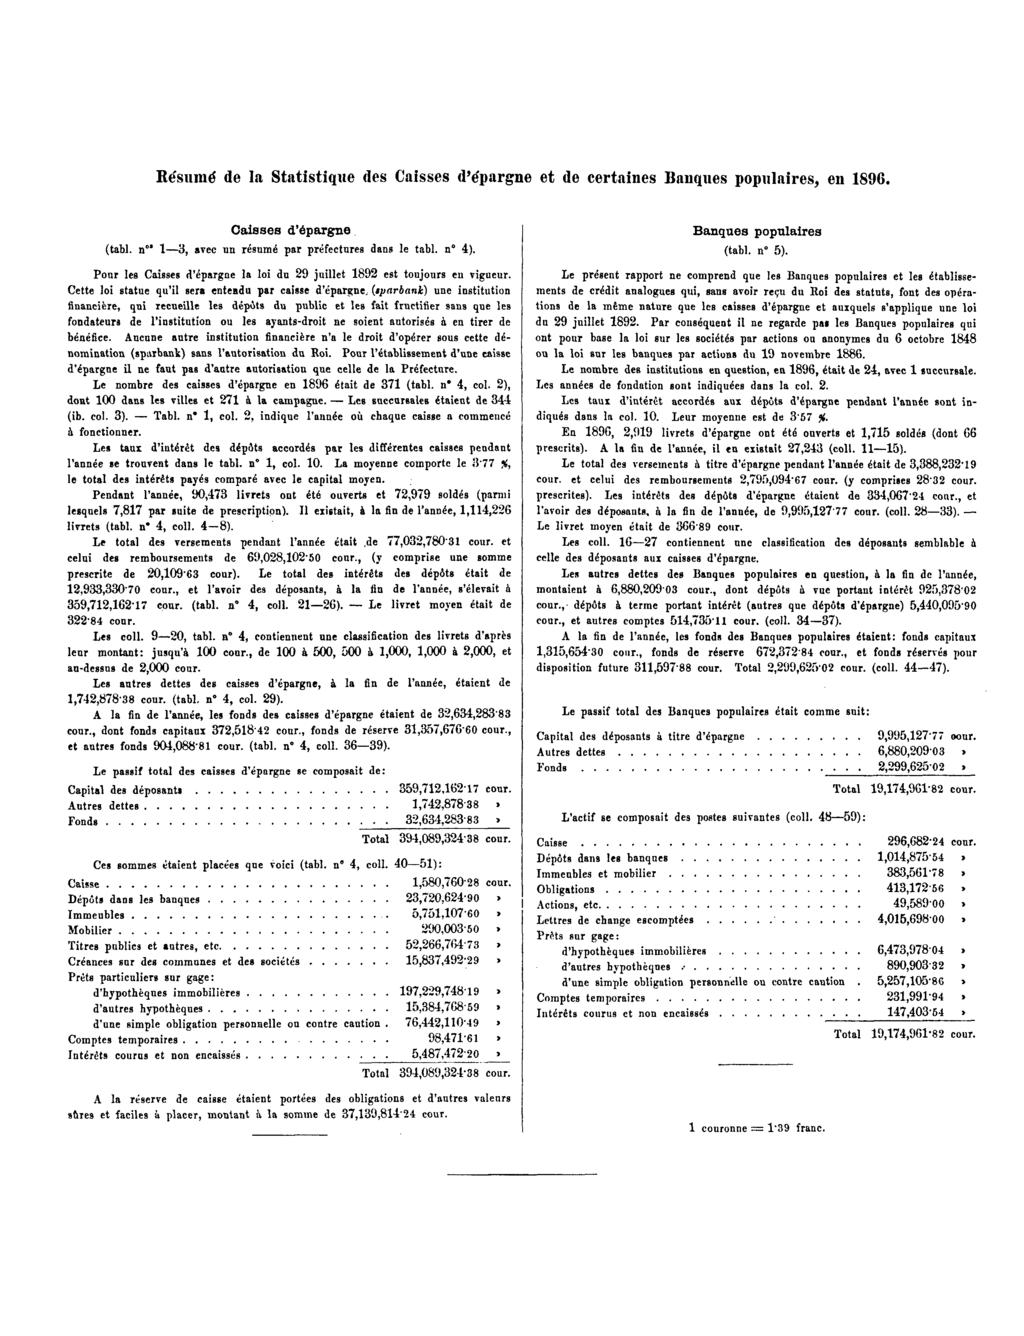 Résumé de la Statistique des Caisses d'épargne et de certaines Banques populaires, en 1896. Caisses d'épargne (tabl. n" 1 3, avec un résumé par préfectures dans le tabl. n 4).